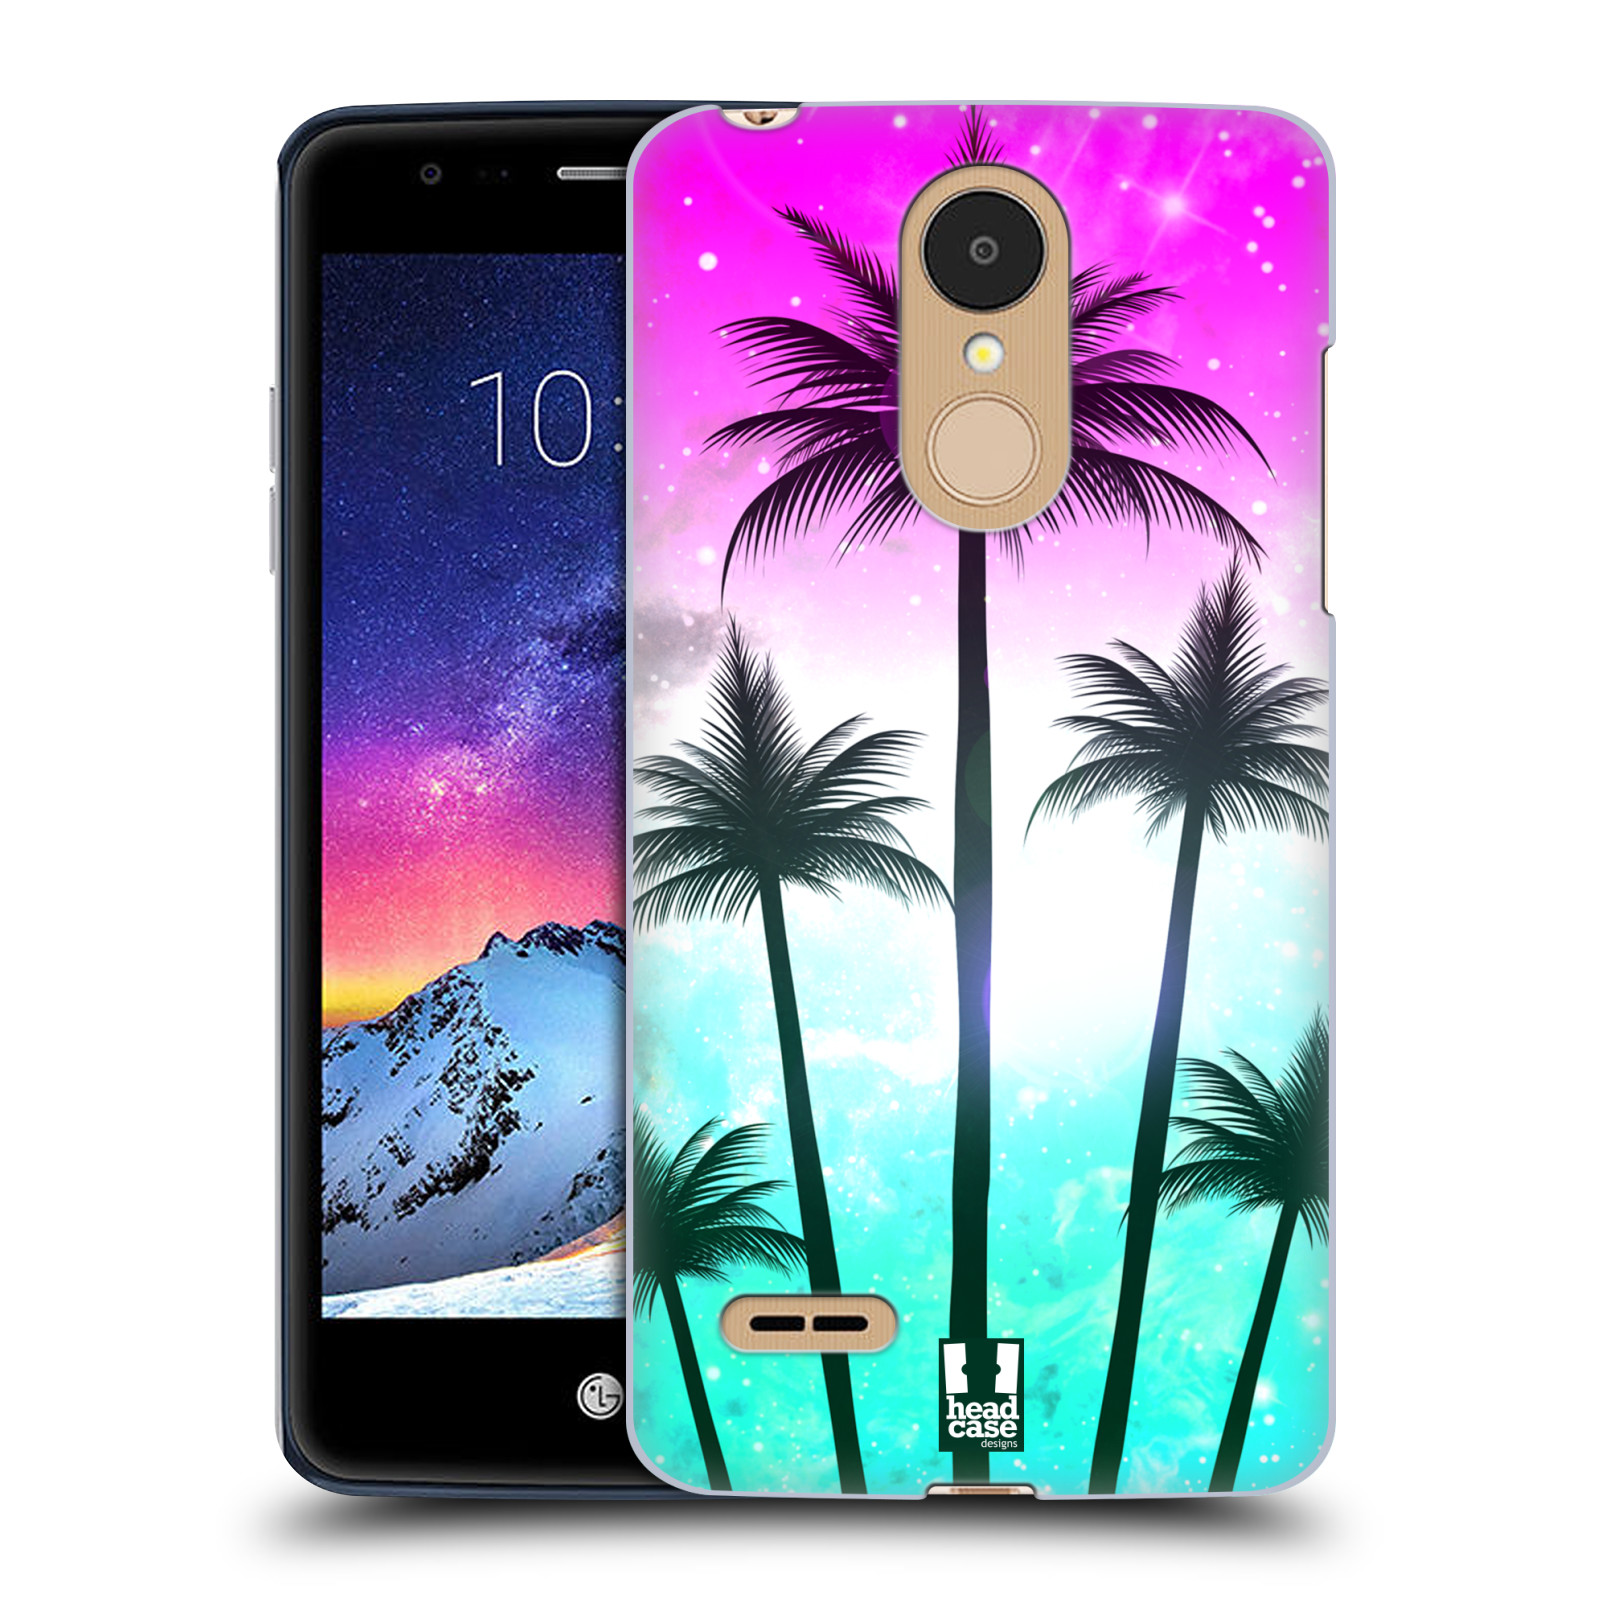 HEAD CASE plastový obal na mobil LG K9 / K8 2018 vzor Kreslený motiv silueta moře a palmy RŮŽOVÁ A TYRKYS